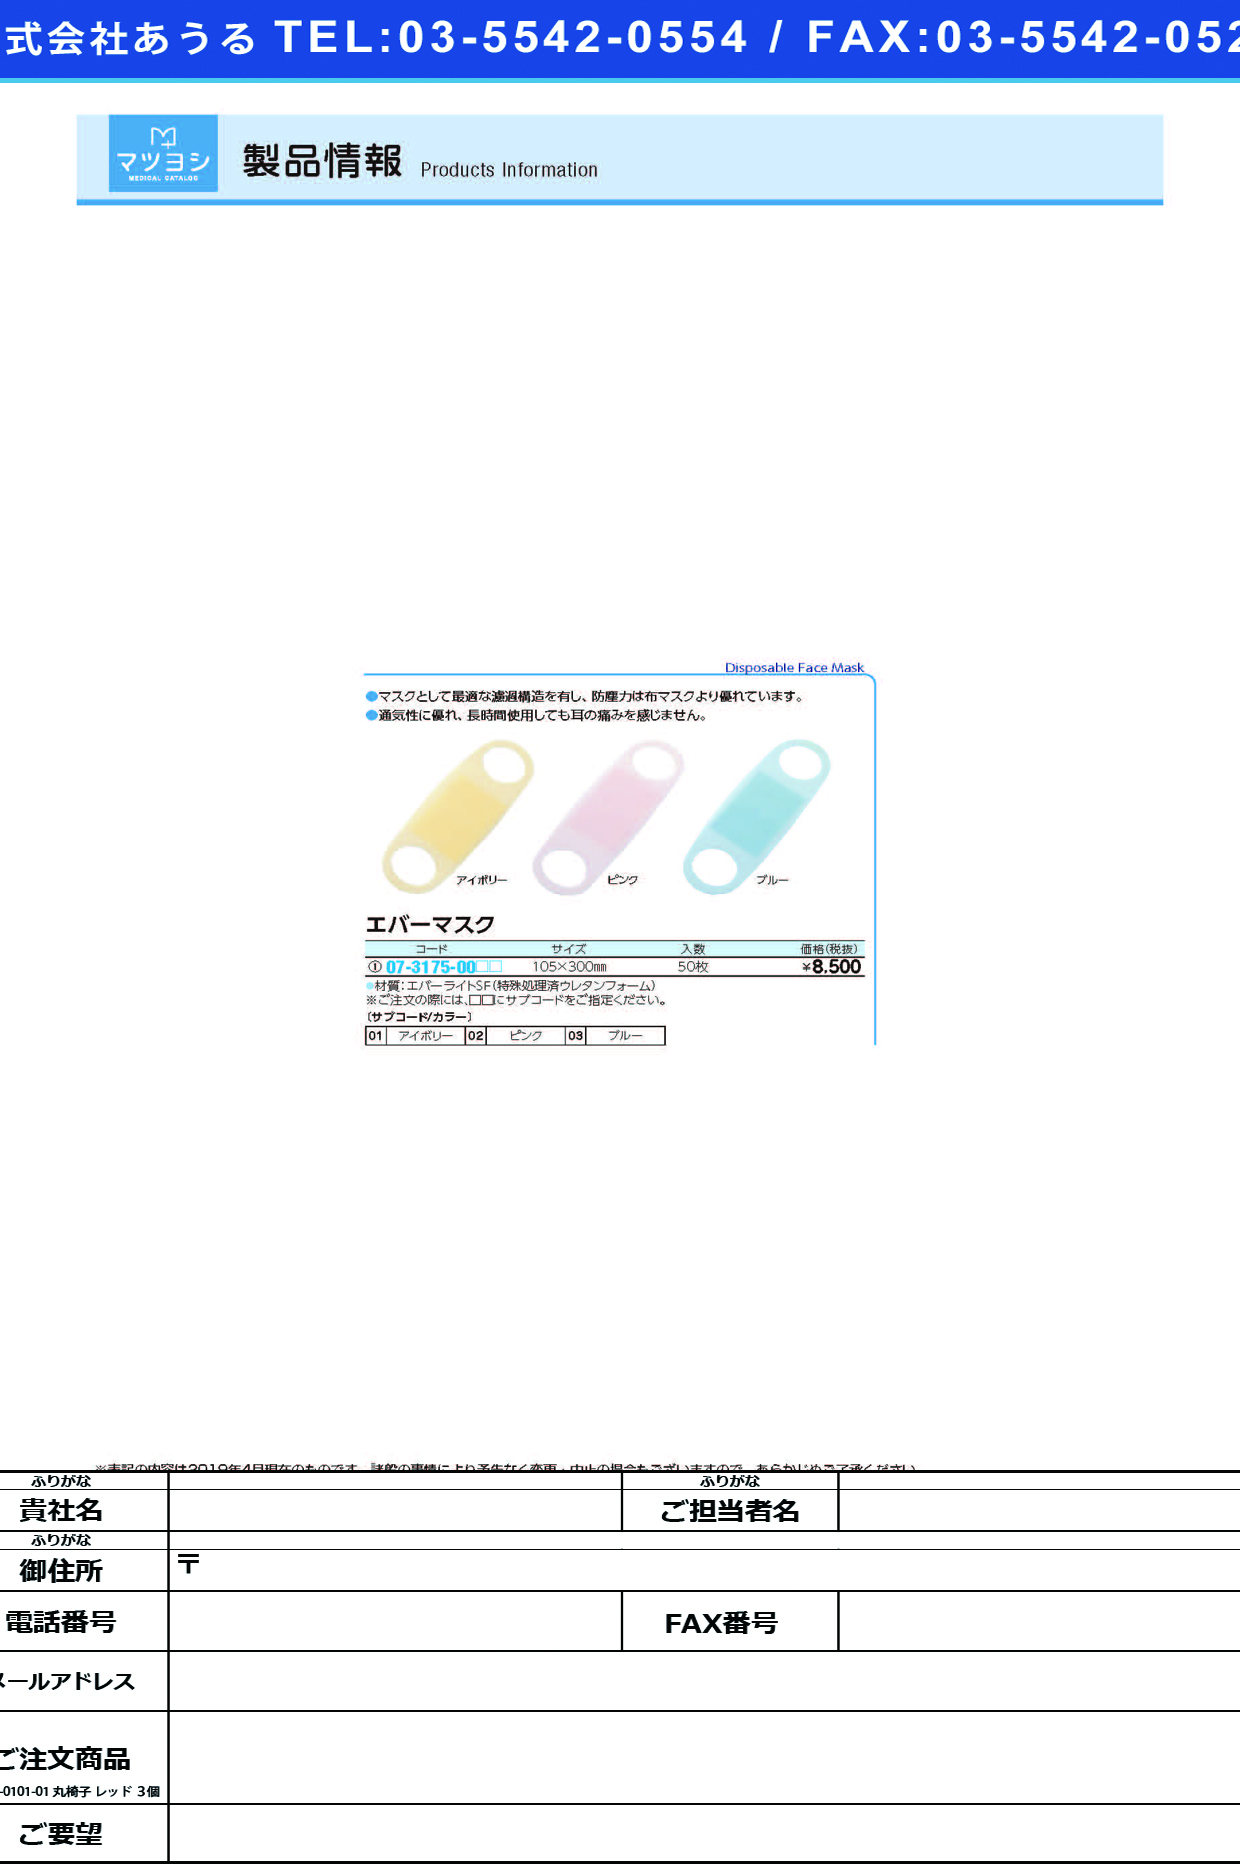 (07-3175-00)エバーマスク 50ﾏｲｲﾘ ｴﾊﾞｰﾏｽｸ ピンク【1箱単位】【2019年カタログ商品】